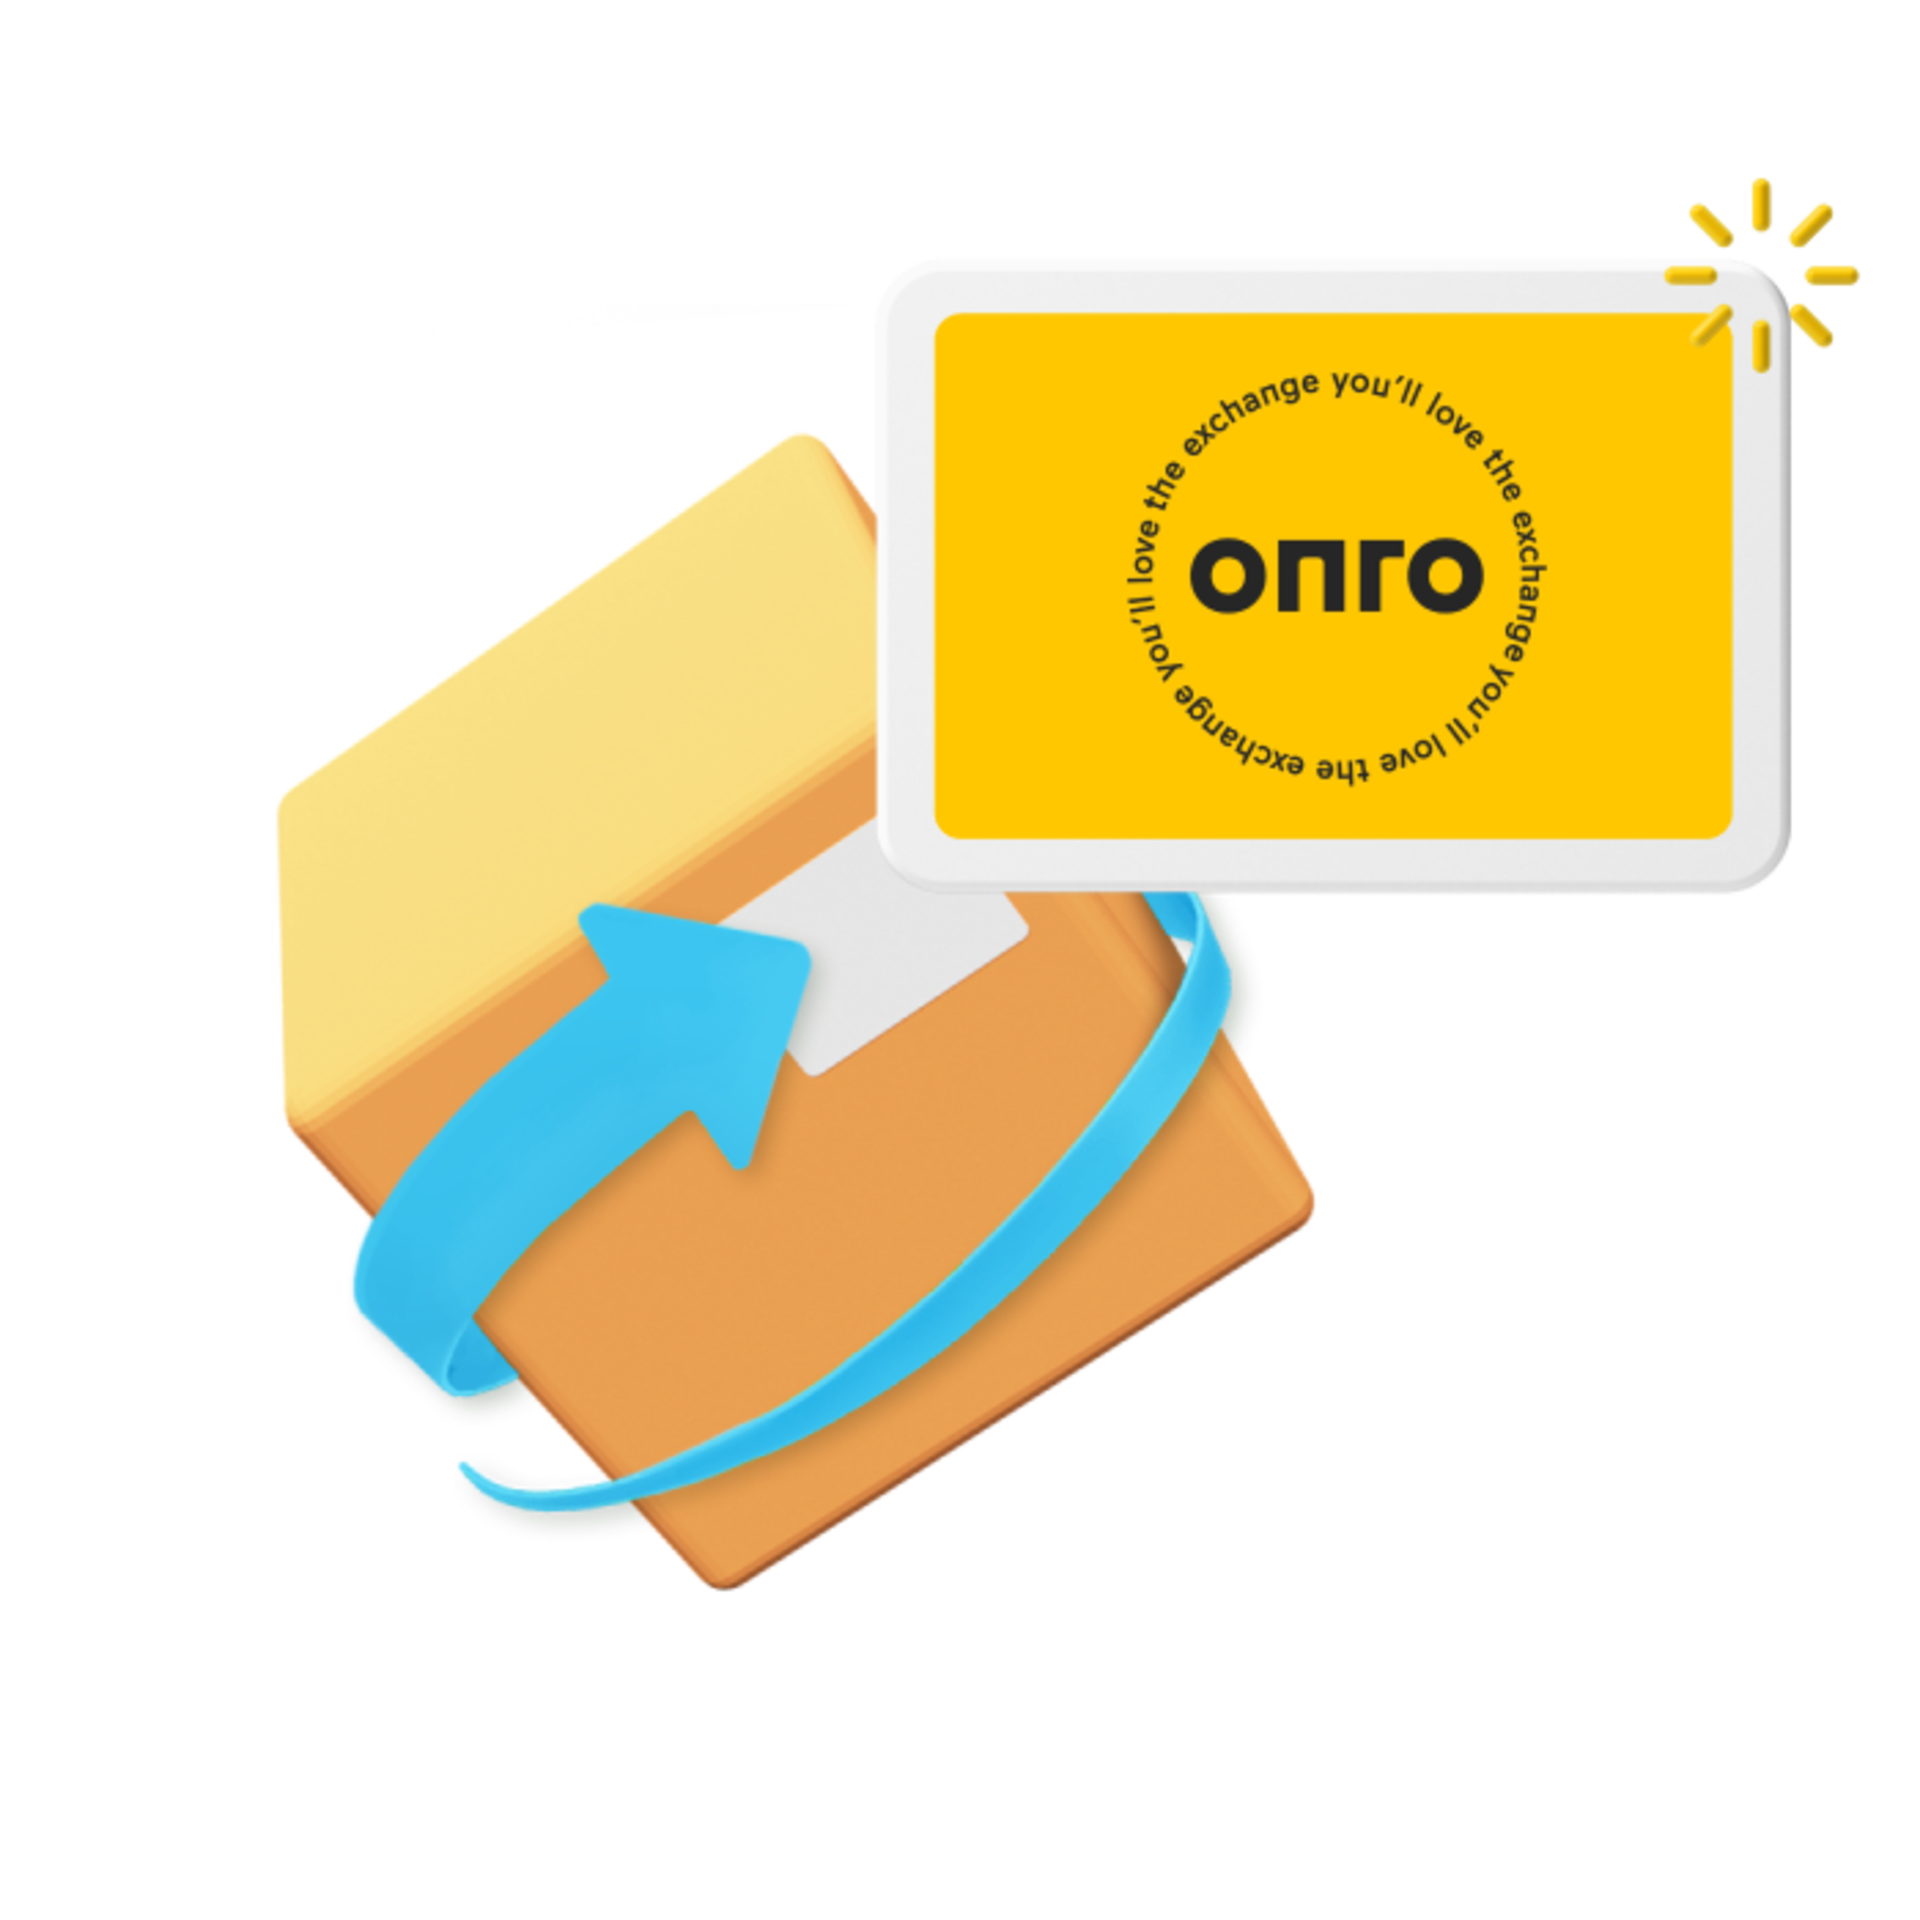 Onro marketplace logo